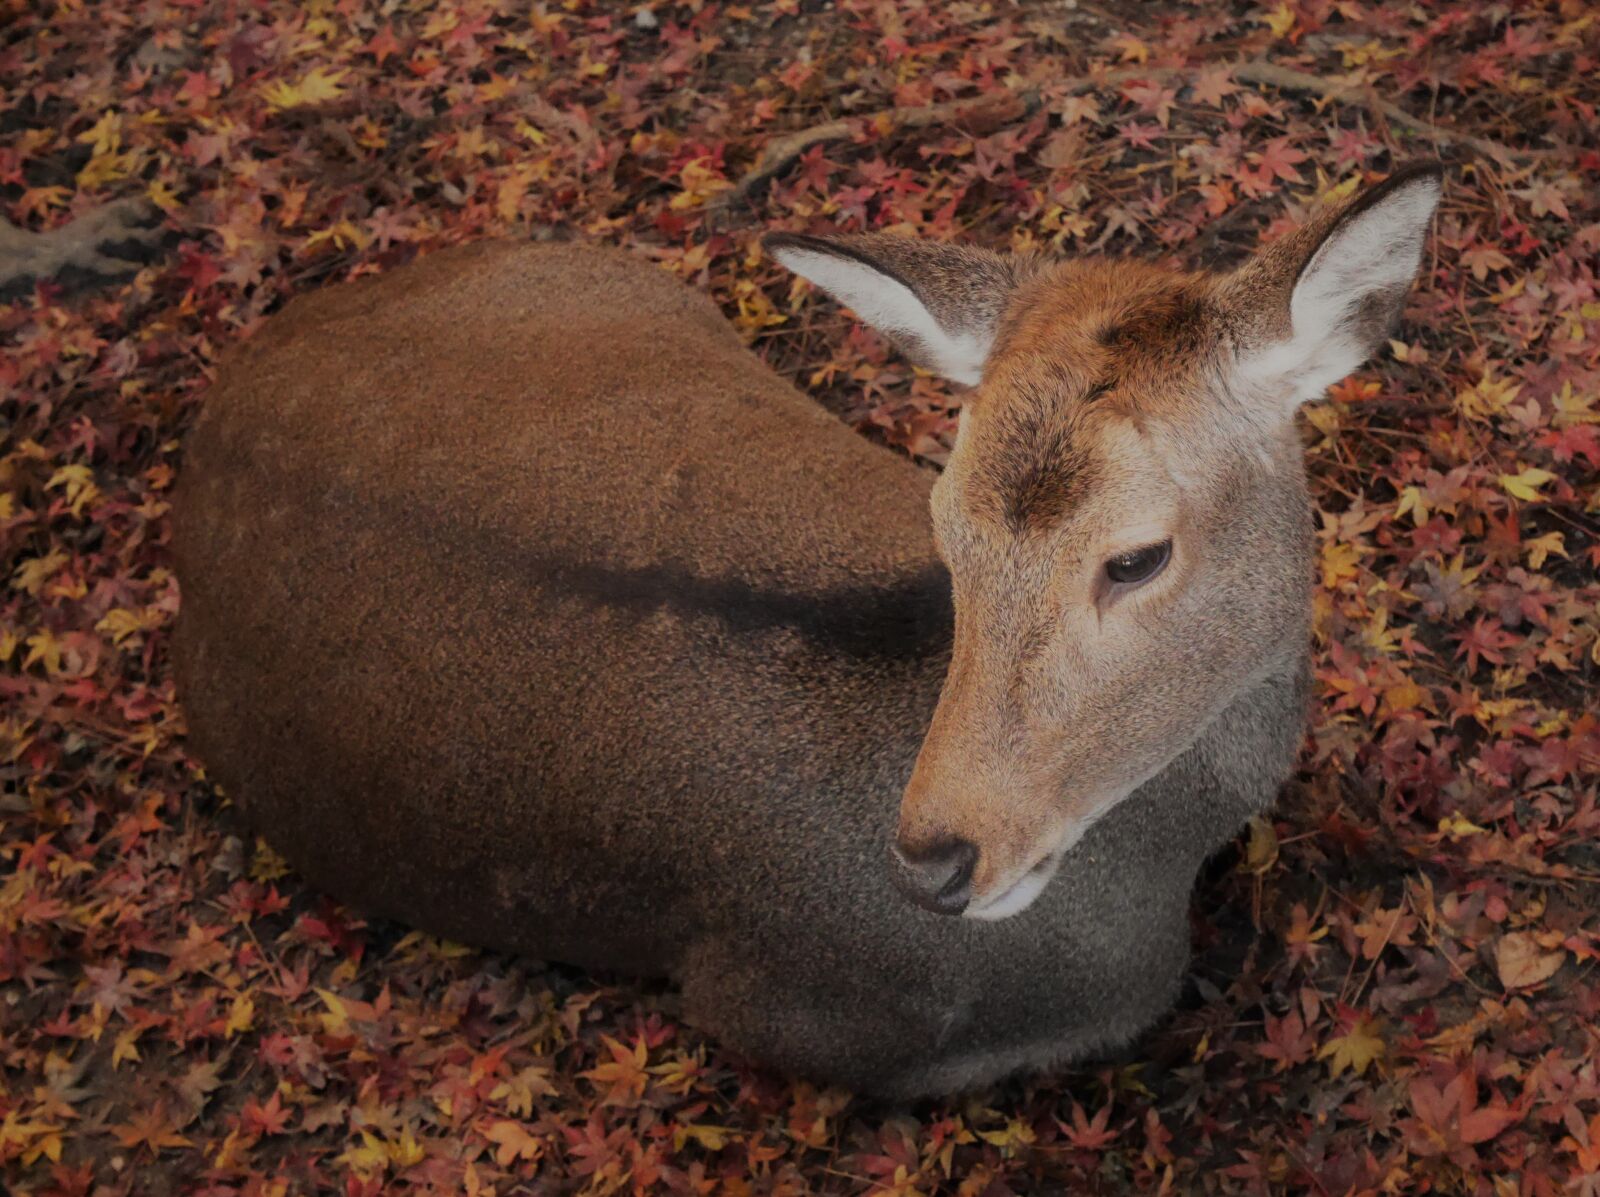 Panasonic Lumix DMC-GM1 sample photo. Deer, autumn, recreation photography